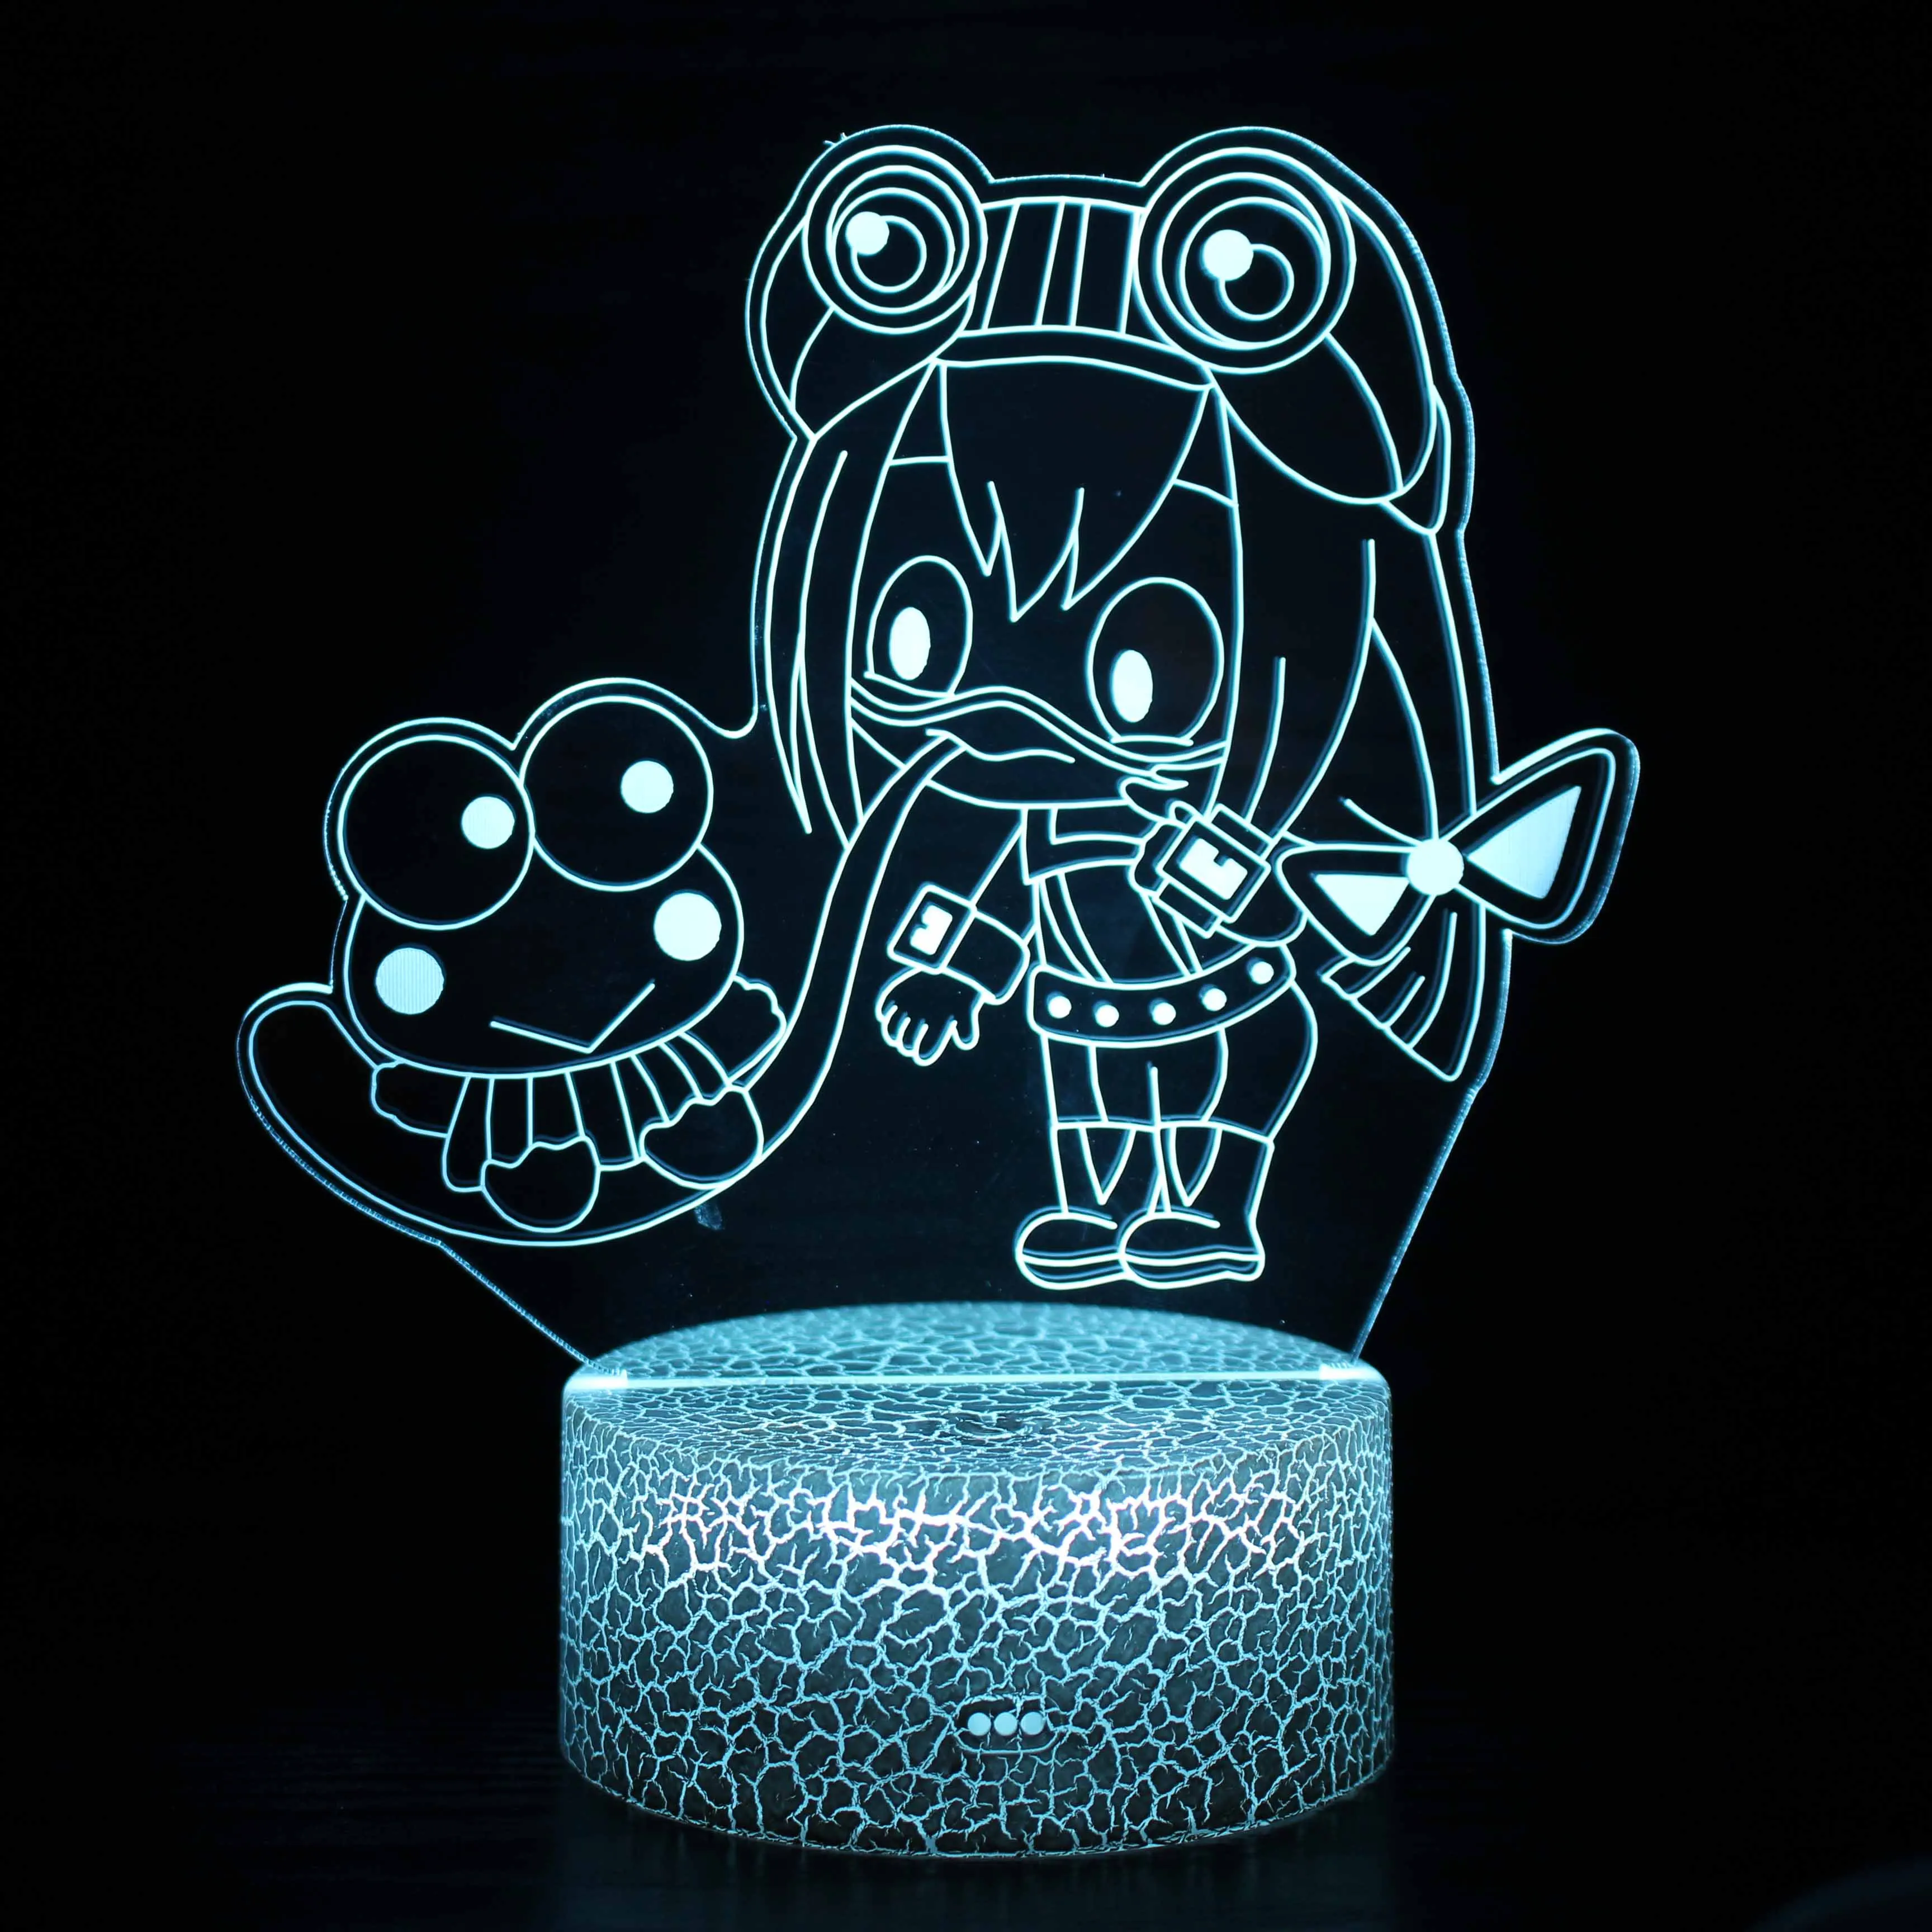 16 цветов Sanrio Kuromi аниме Hello Kitty Kawaii светодиодный 3D ночсветильник модель детской